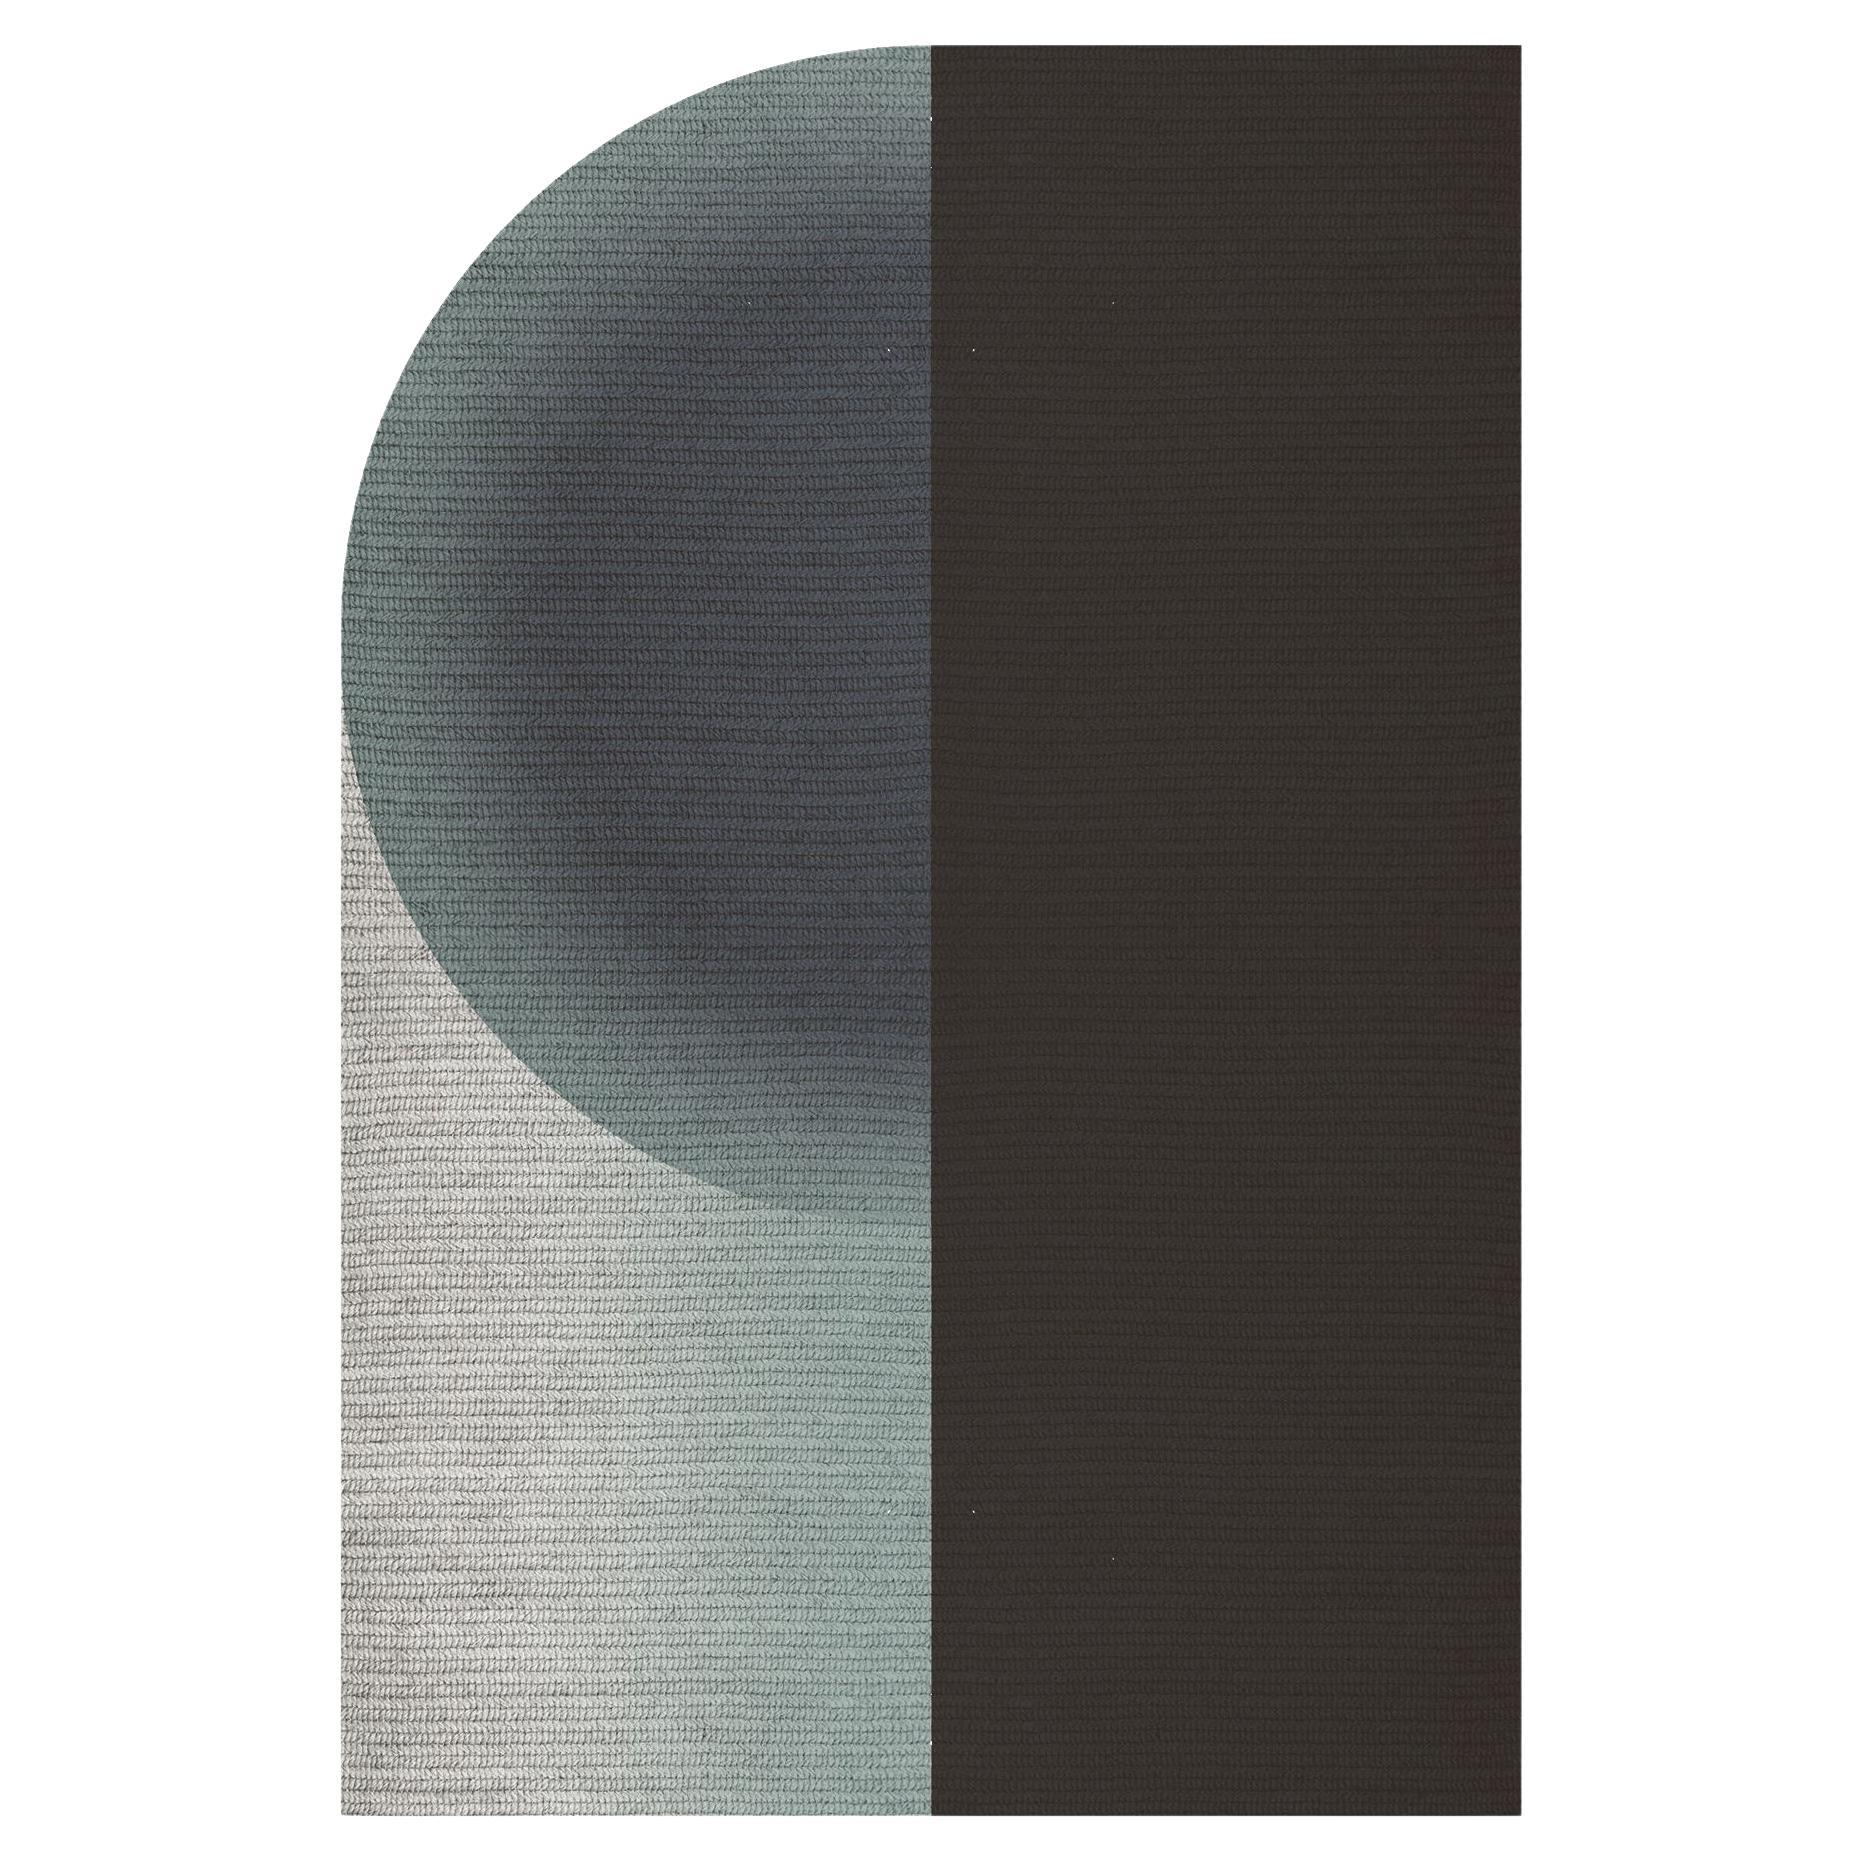 „Glow“ Teppich aus Abaca, Farbe „Sterling“, 260x390cm, von Claire Vos für Musett Design